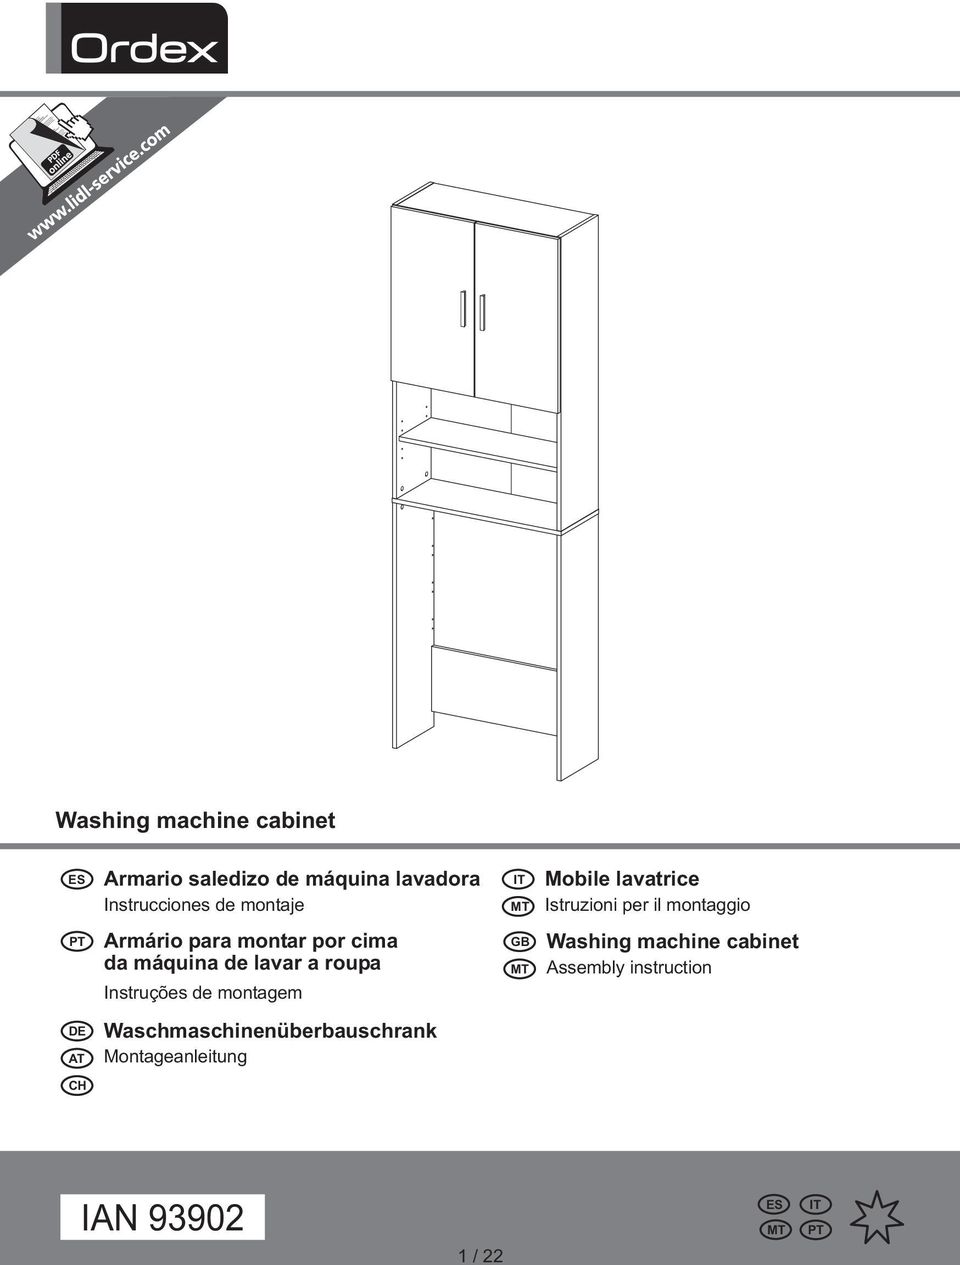 Instruções de montagem Waschmaschinenüberbauschrank Montageanleitung IT MT GB MT